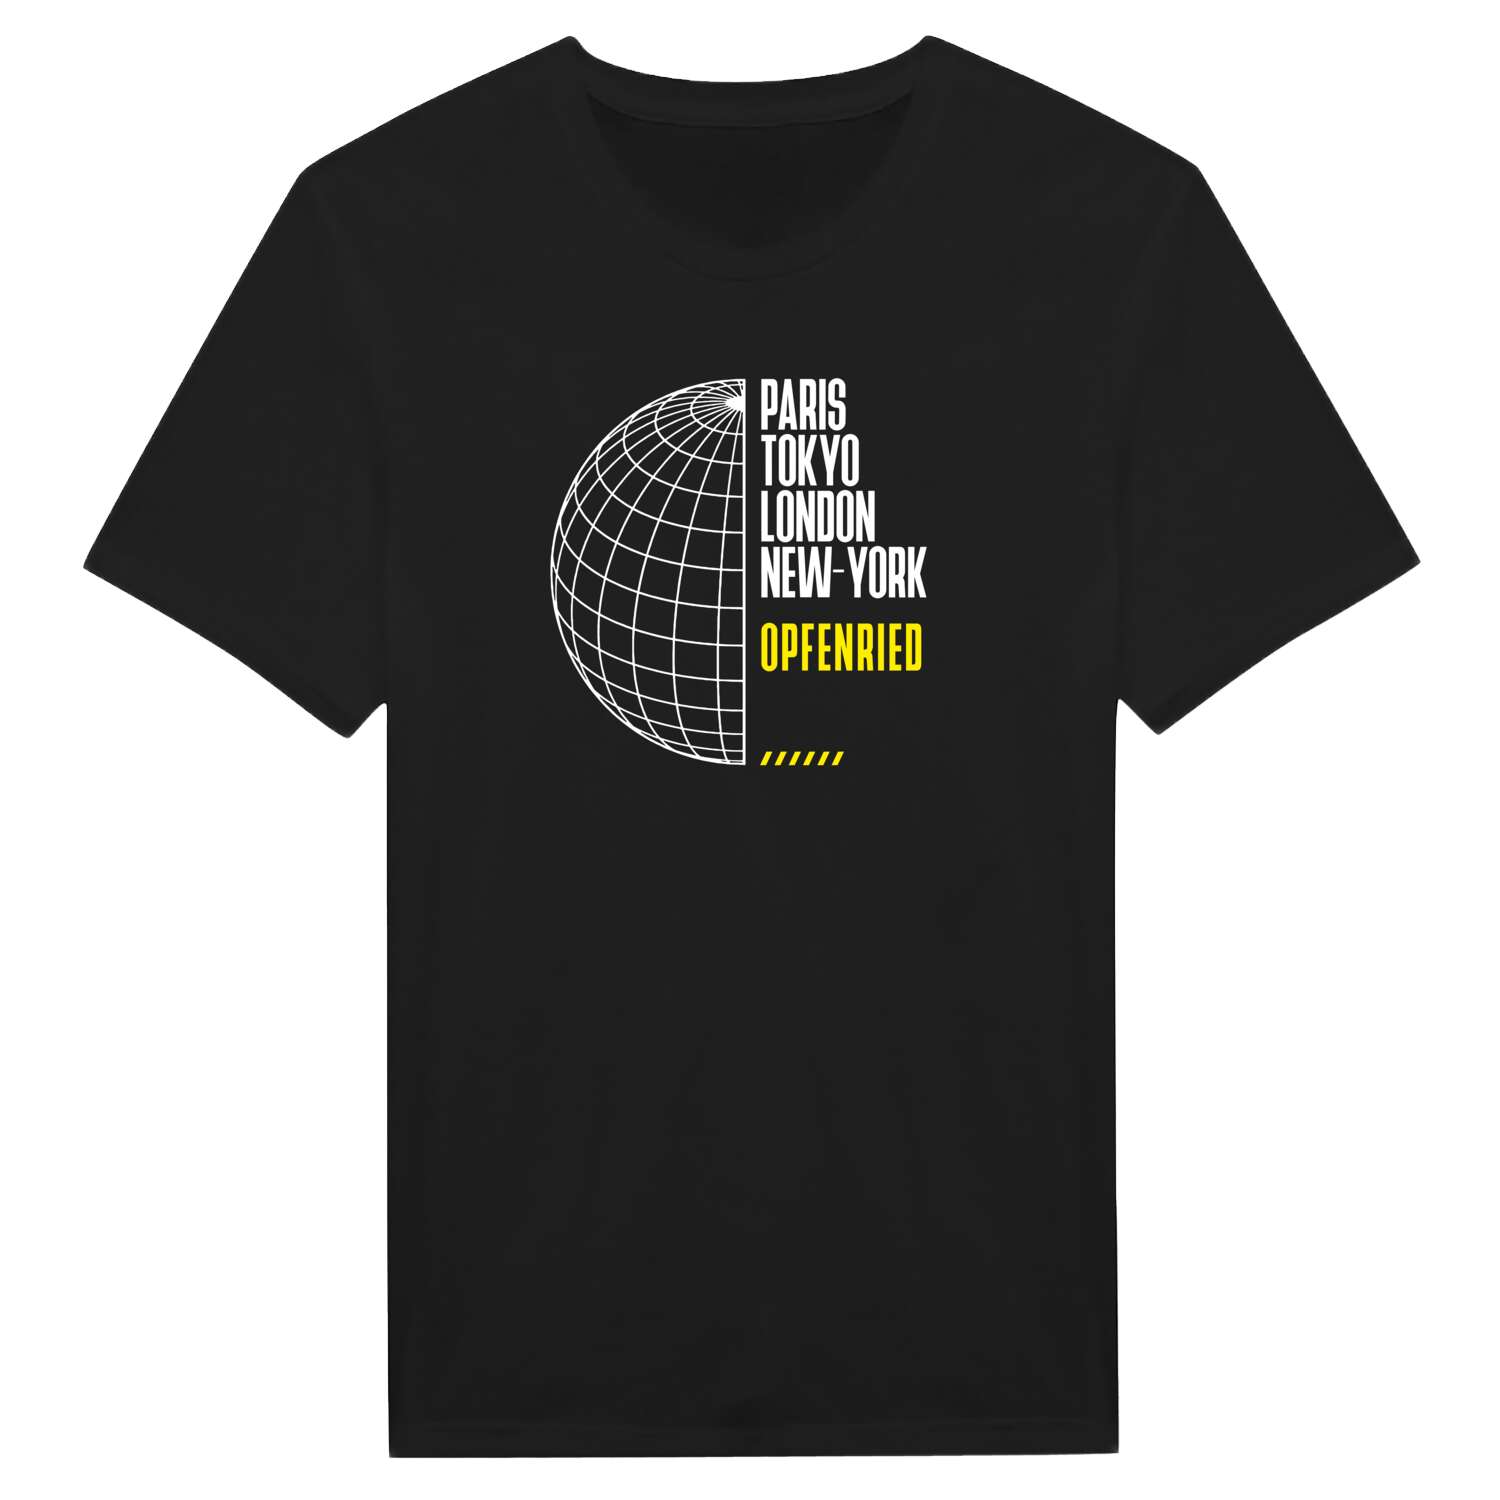 Opfenried T-Shirt »Paris Tokyo London«